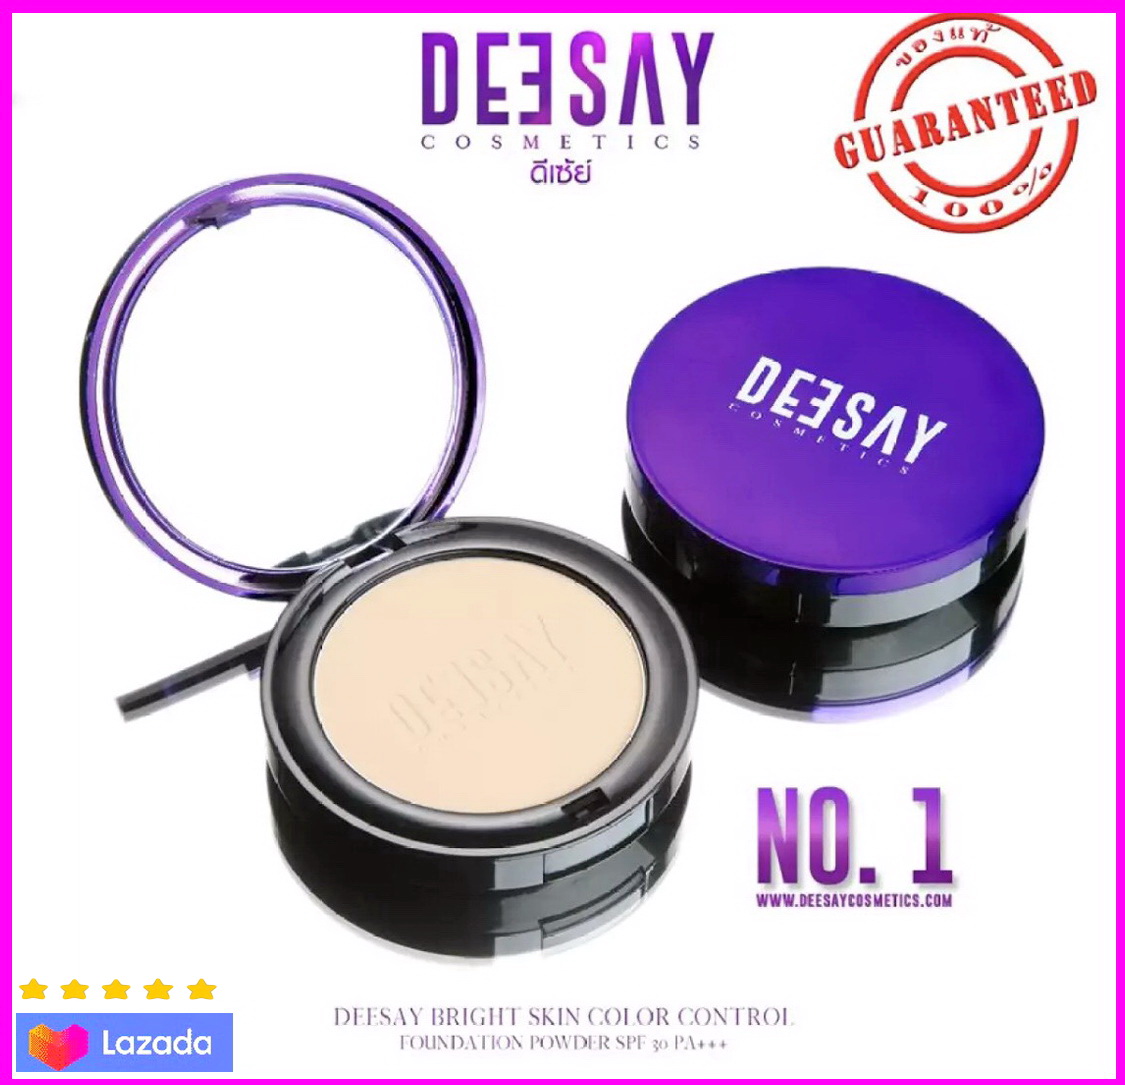 ( จัดส่งฟรี) Deesay Bright Skin Color Control Foundation Powder SPF 30 PA+++ ดีเซย์ แป้งพัฟผสมรองพื้น โดยแก้มบุ๋ม เนื้อเนียน บางเบาแต่ปกปิด ขนาด. 11.5 g # No.01 (จัดส่งฟรี)